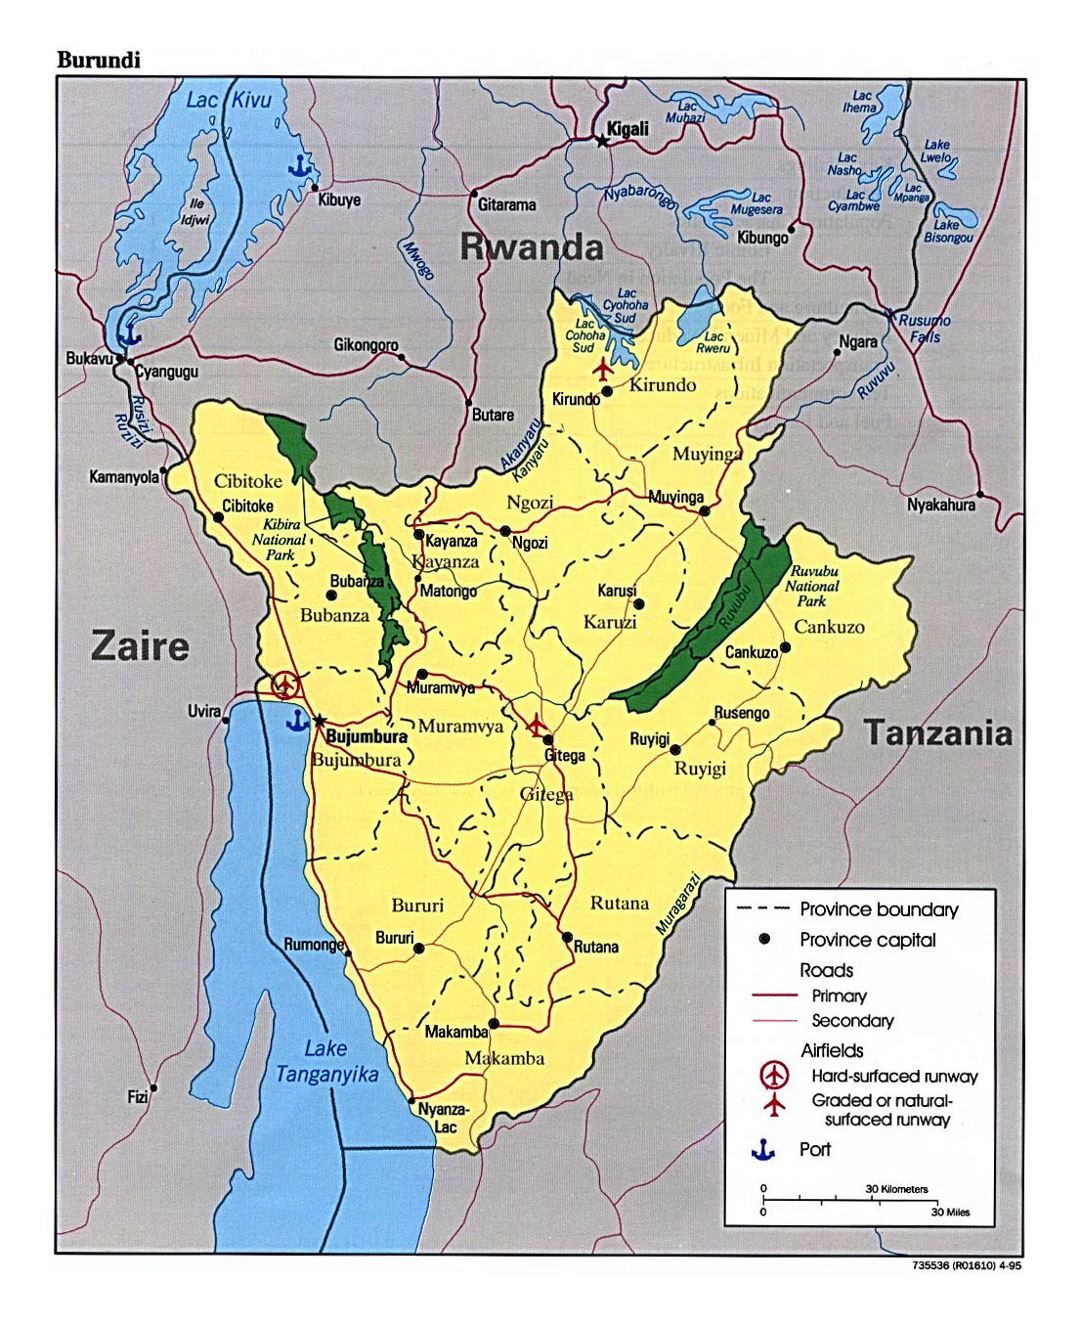 Детальная карта Бурунди с административным делением, дорогами, крупными городами, аэропортами и портами - 1995